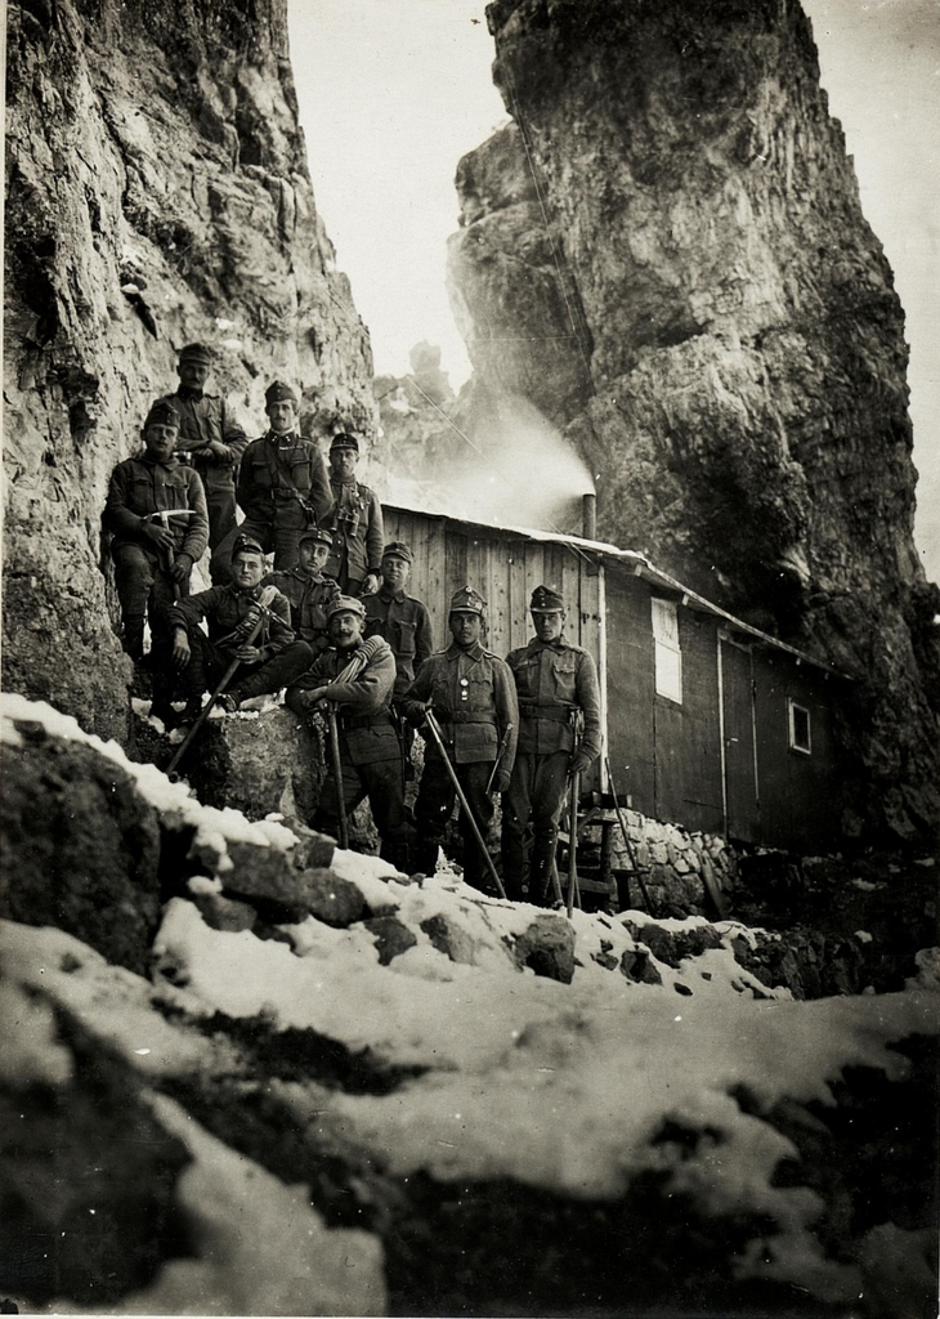 Prvi svjetski rat u Dolomitima | Author: public domain